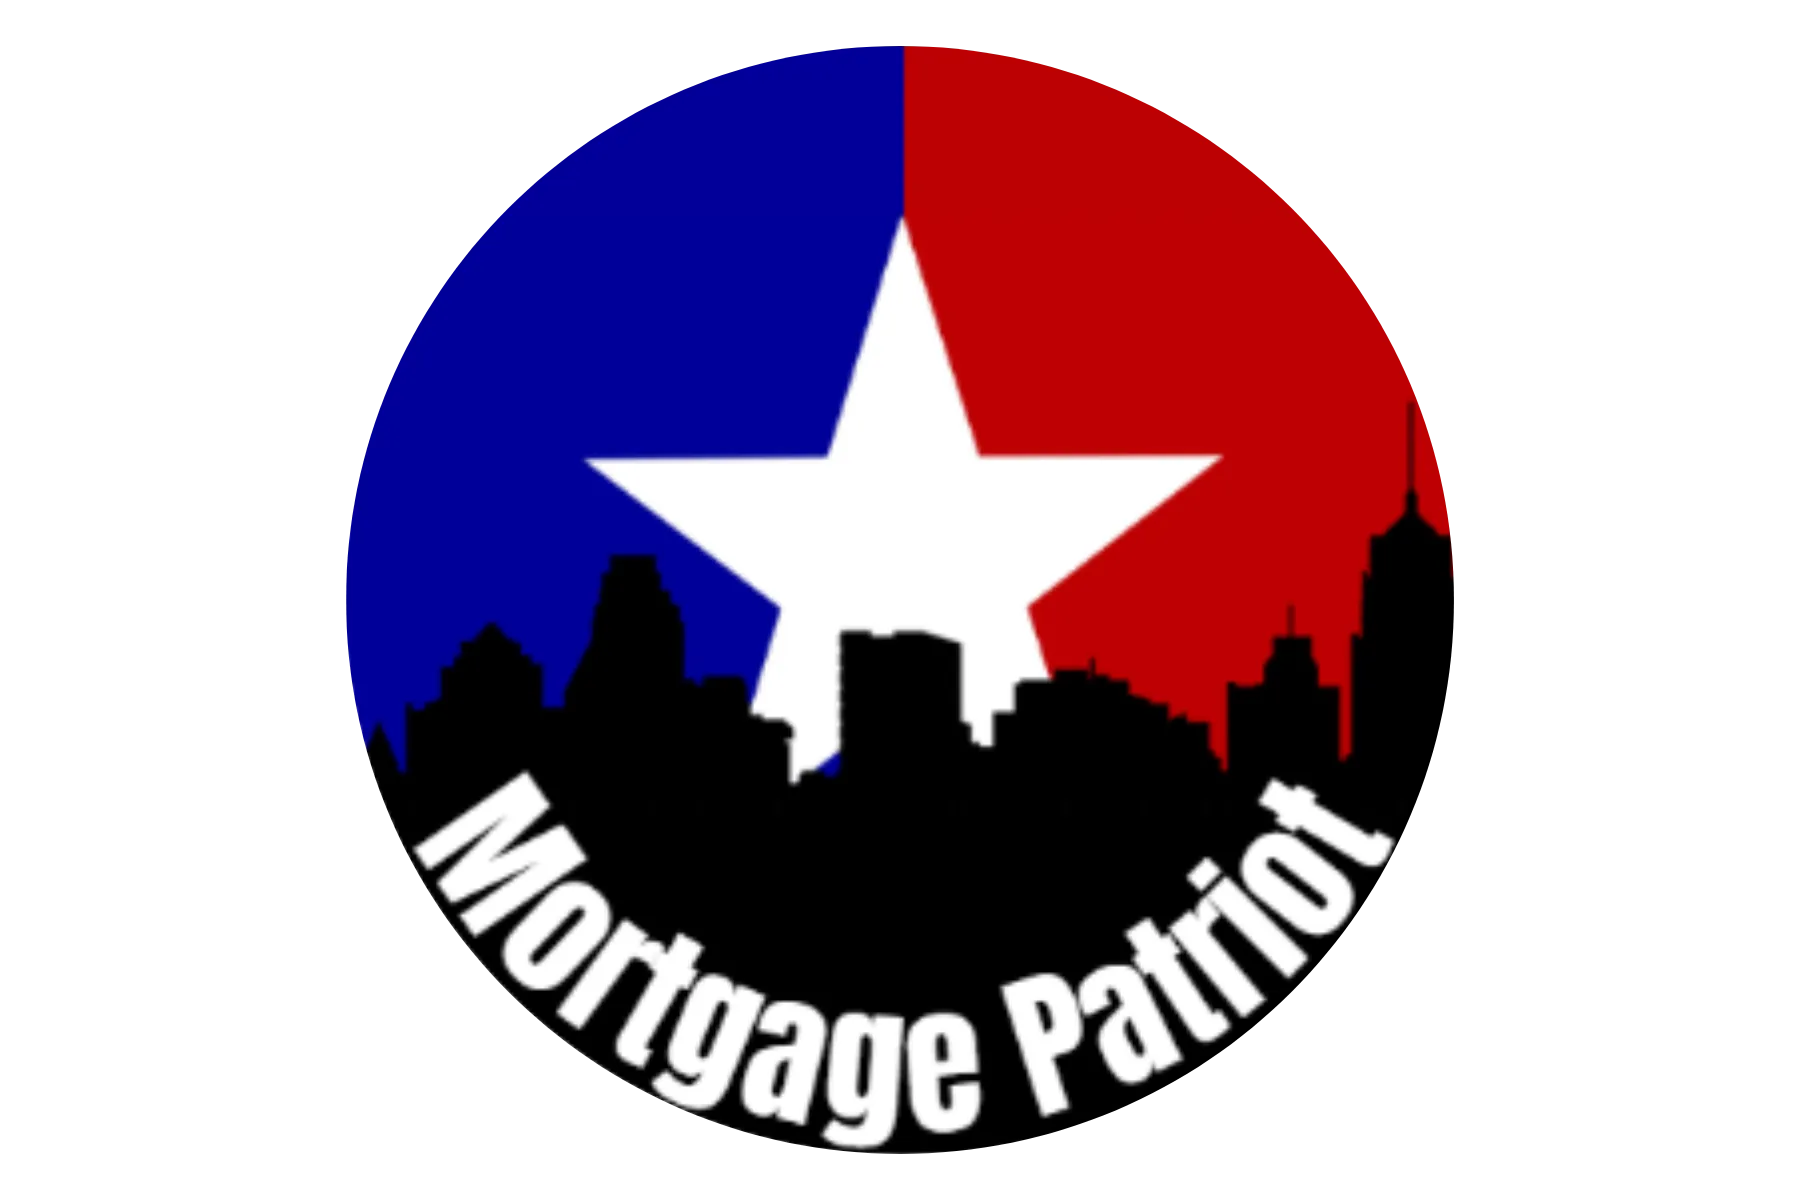 Mortgage Patriot - Patrick Kevin Fagan